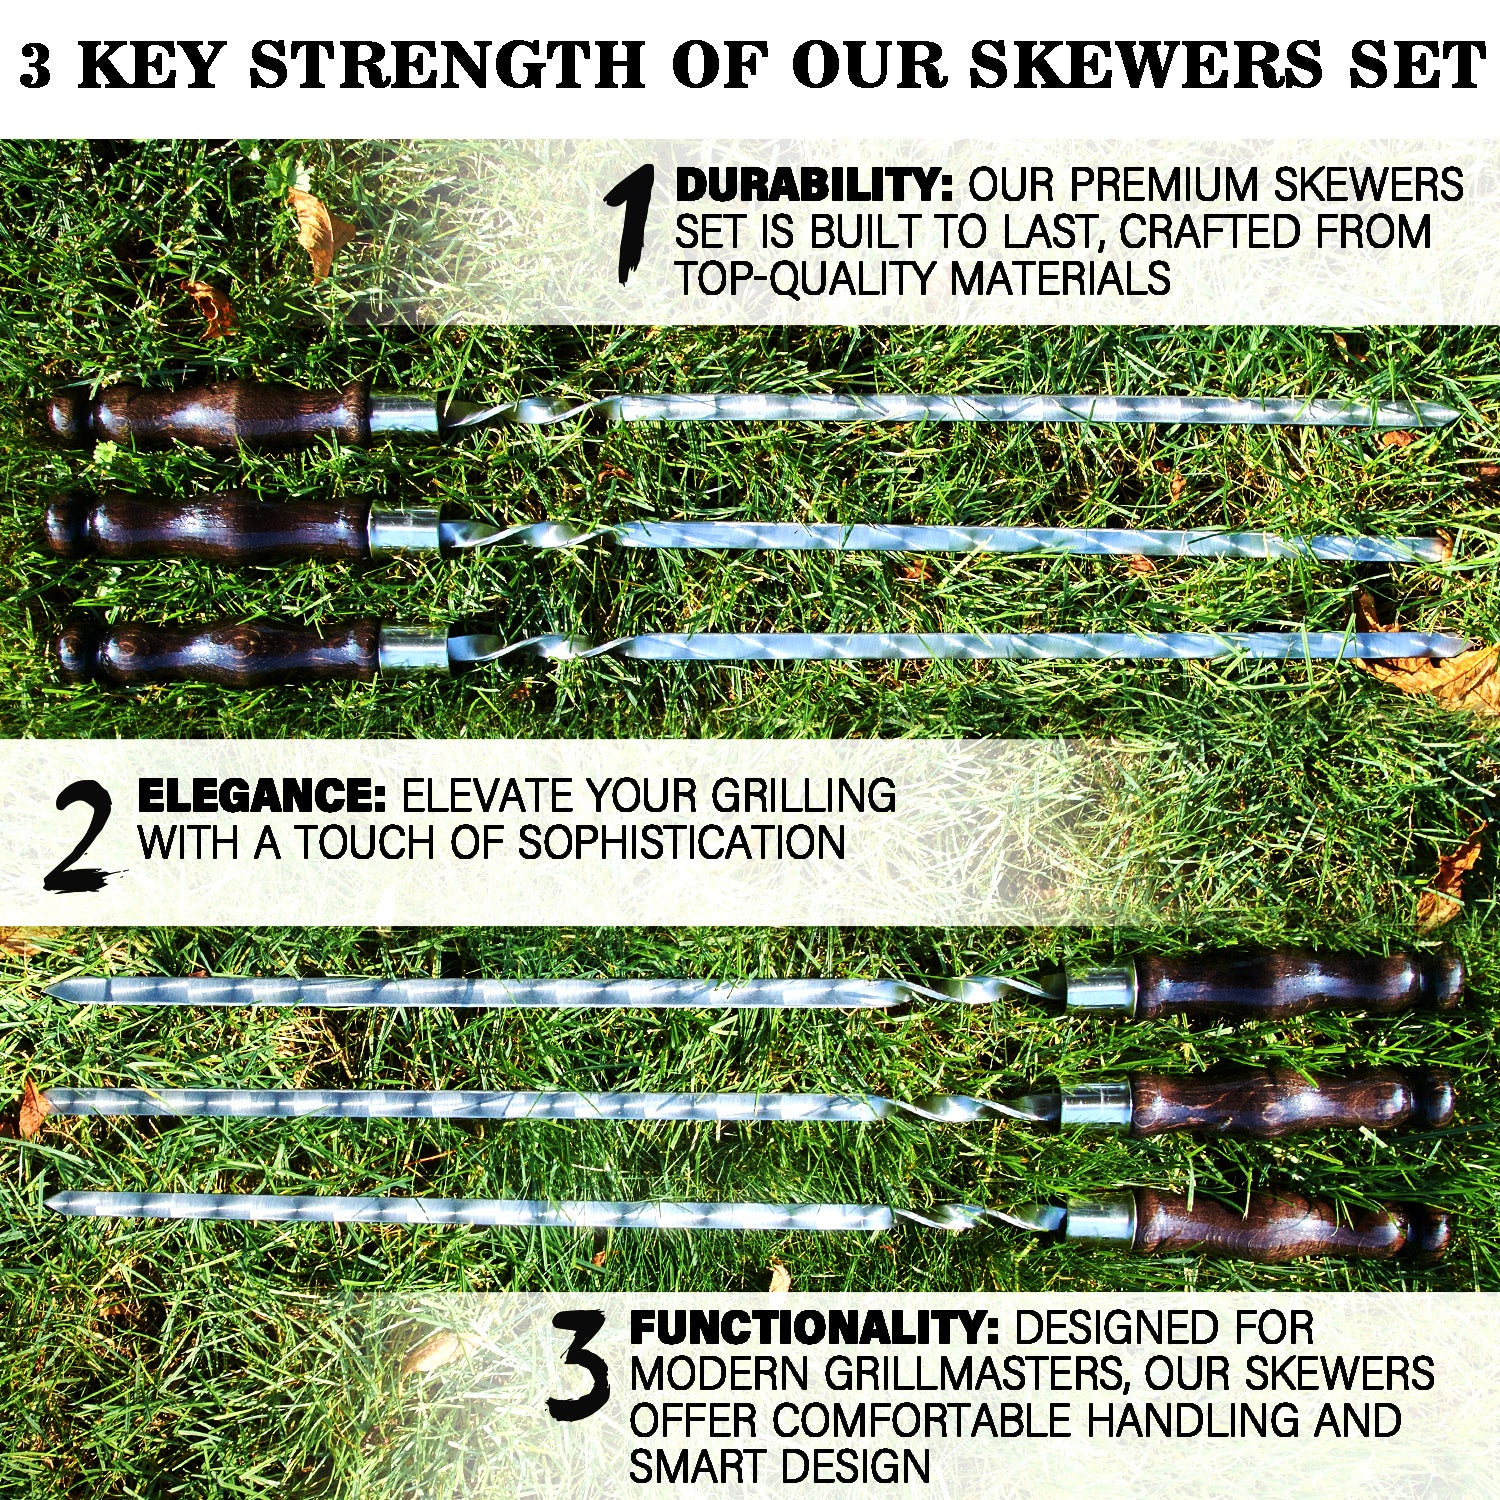 6 in 1 Skewers Set - Premium Skewer Kit for Outdoor Grilling